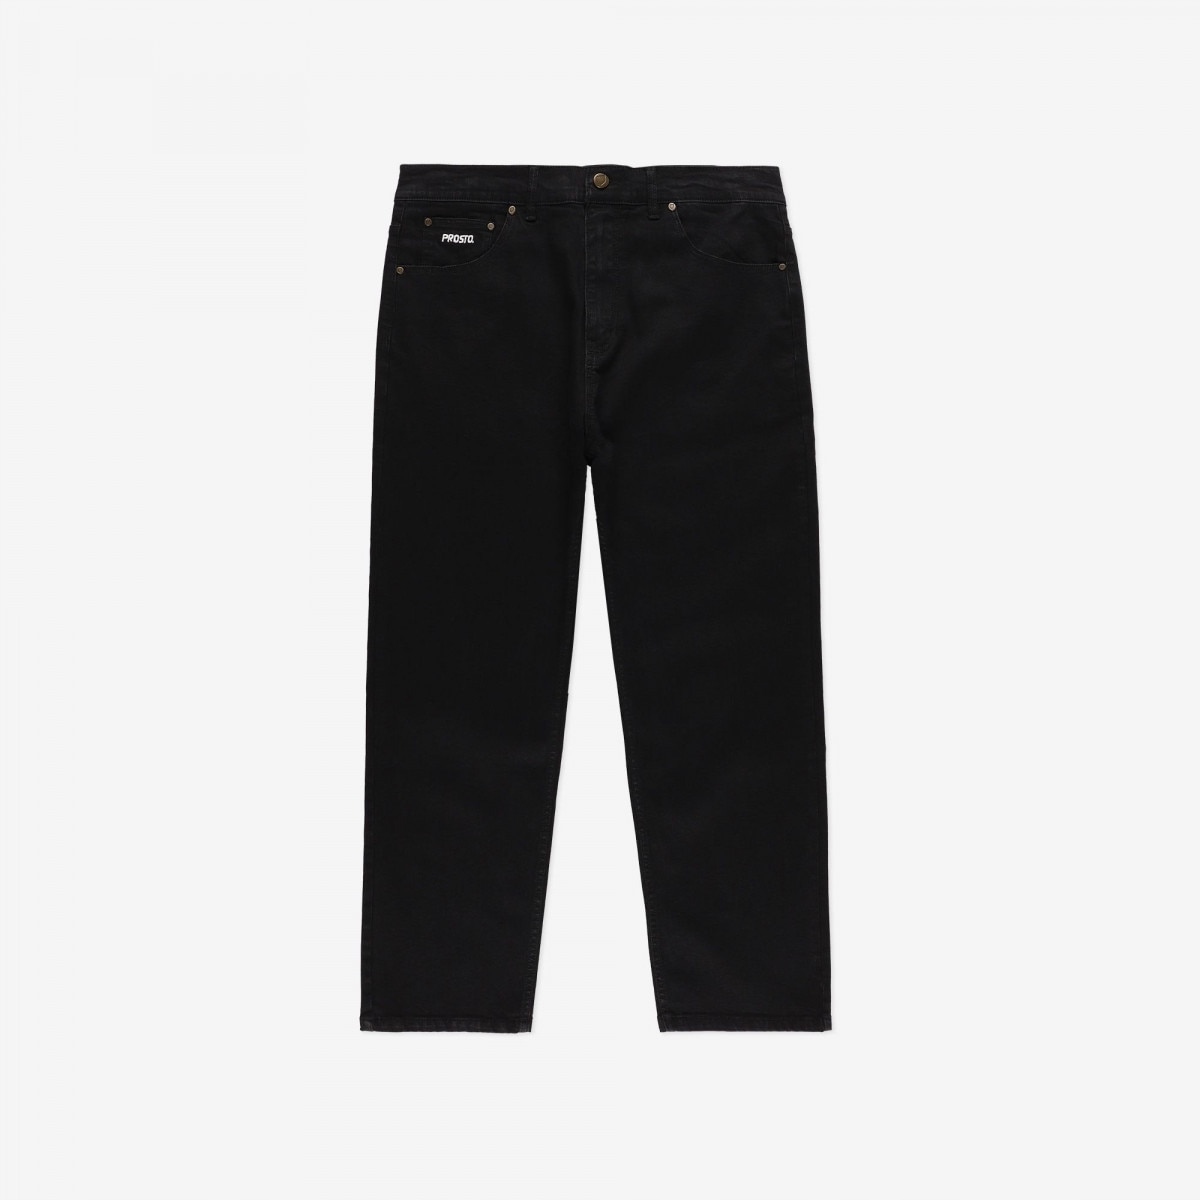 Prosto nohavice Jeans Baggy Oyeah čierne m.6 veľkosť 38/34